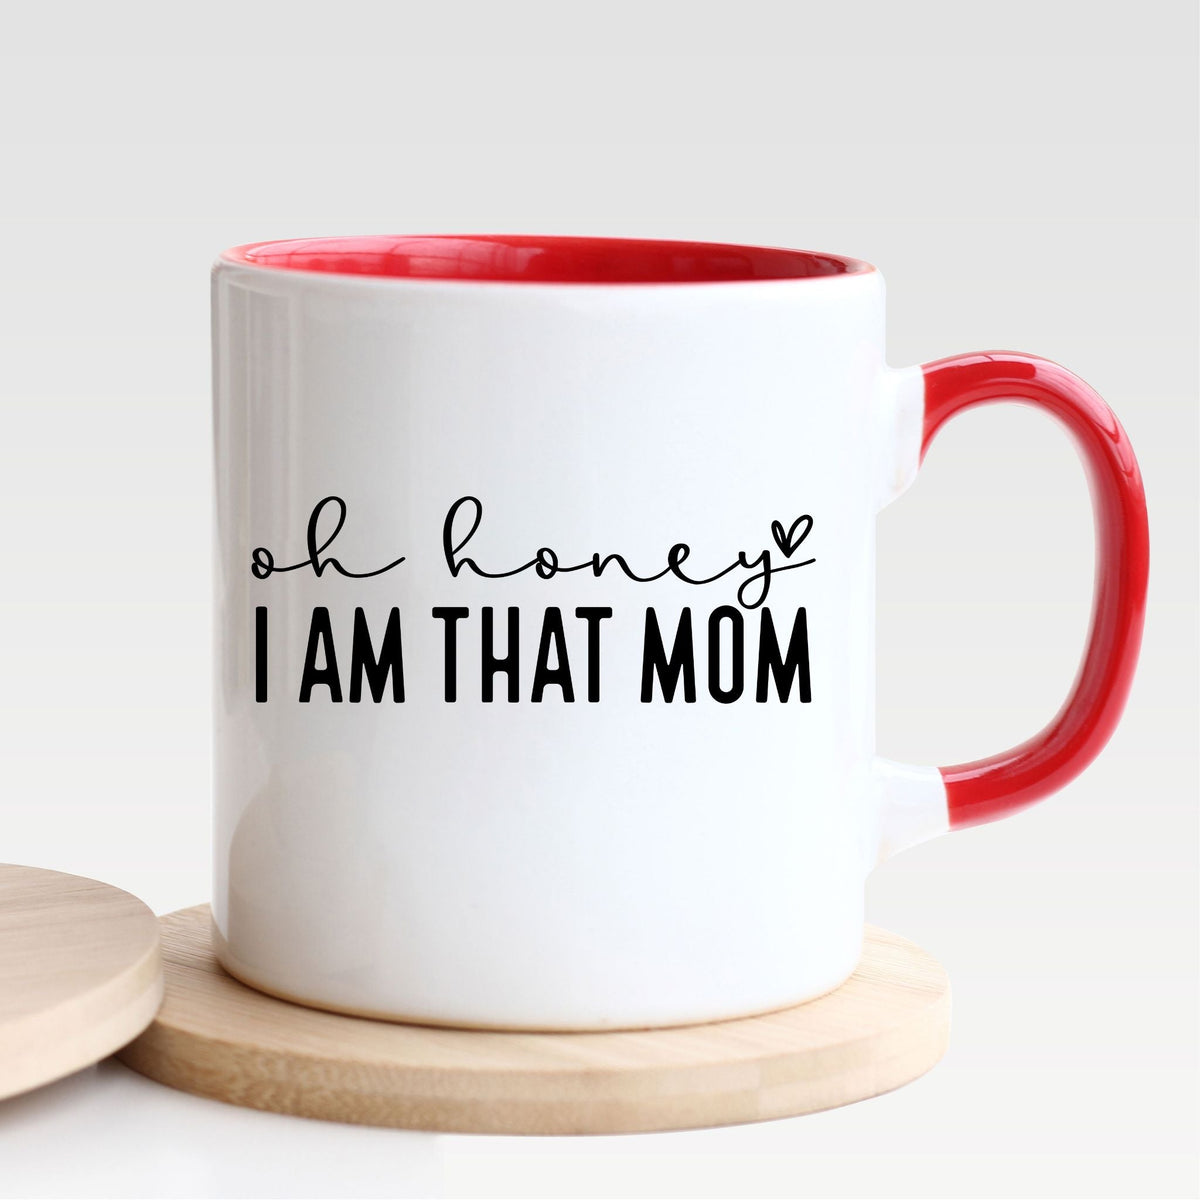 Oh Honey I Am That Mom - Mug